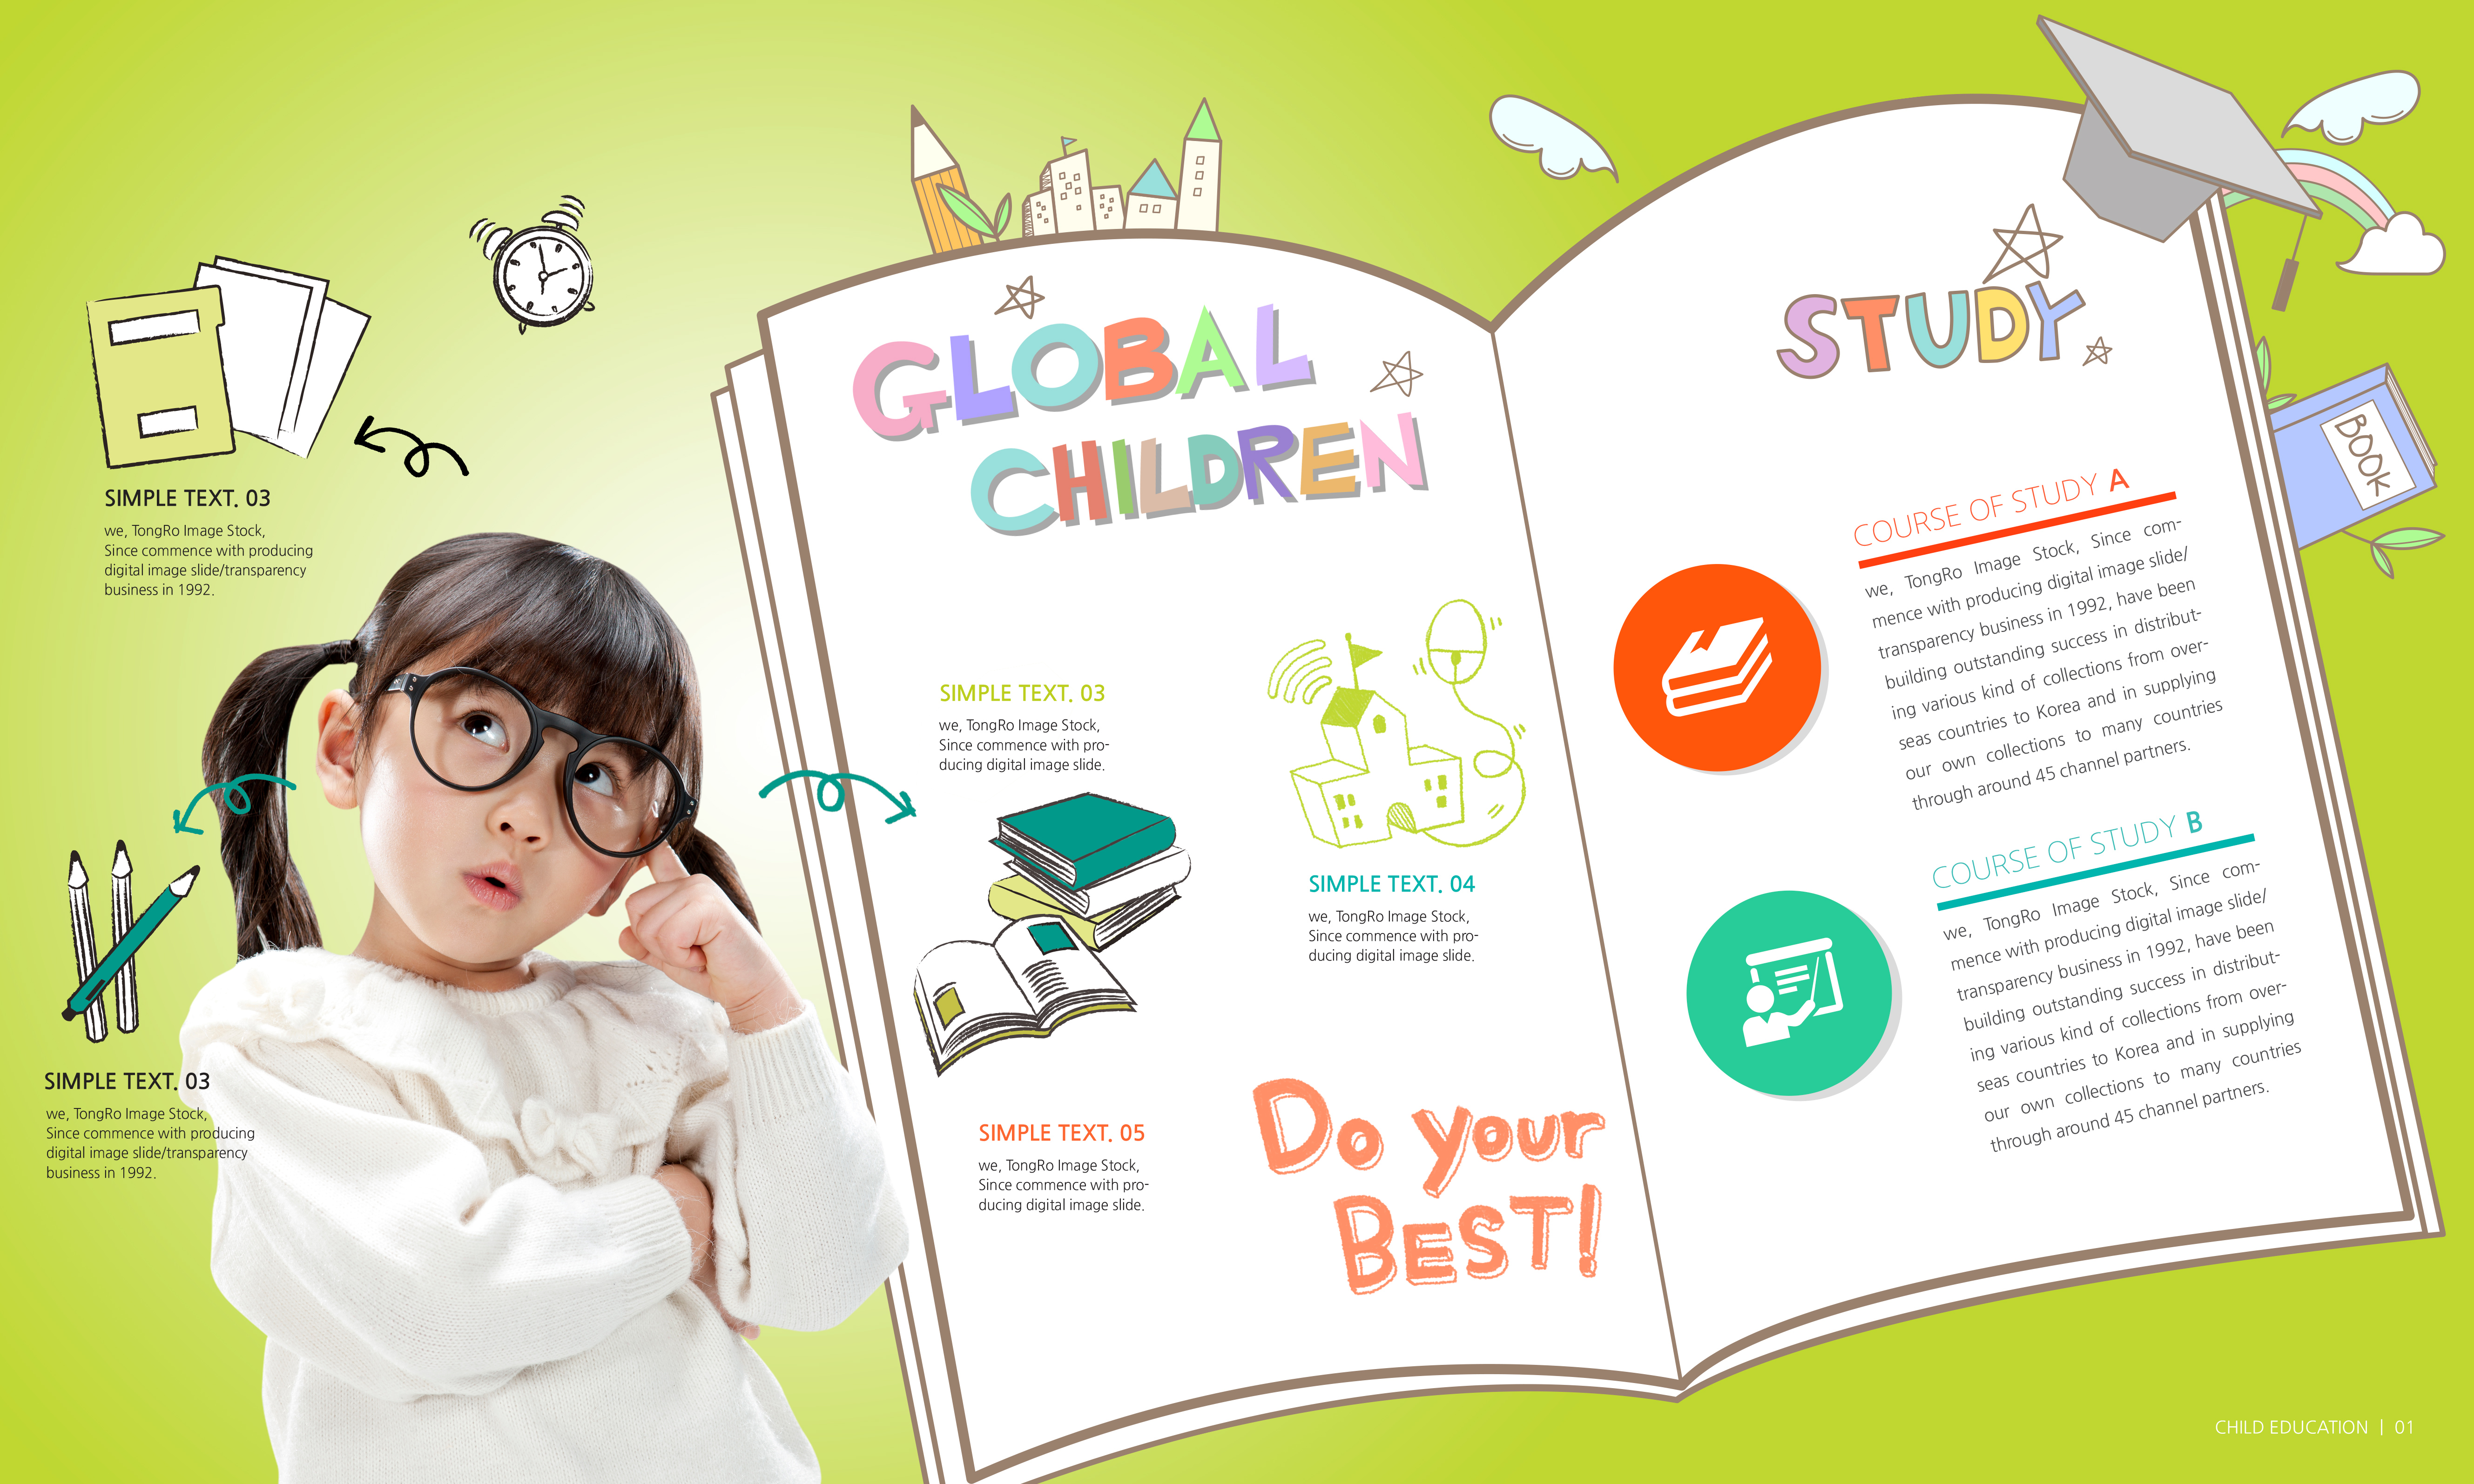 少儿&儿童教育在线学习主题韩国素材插图